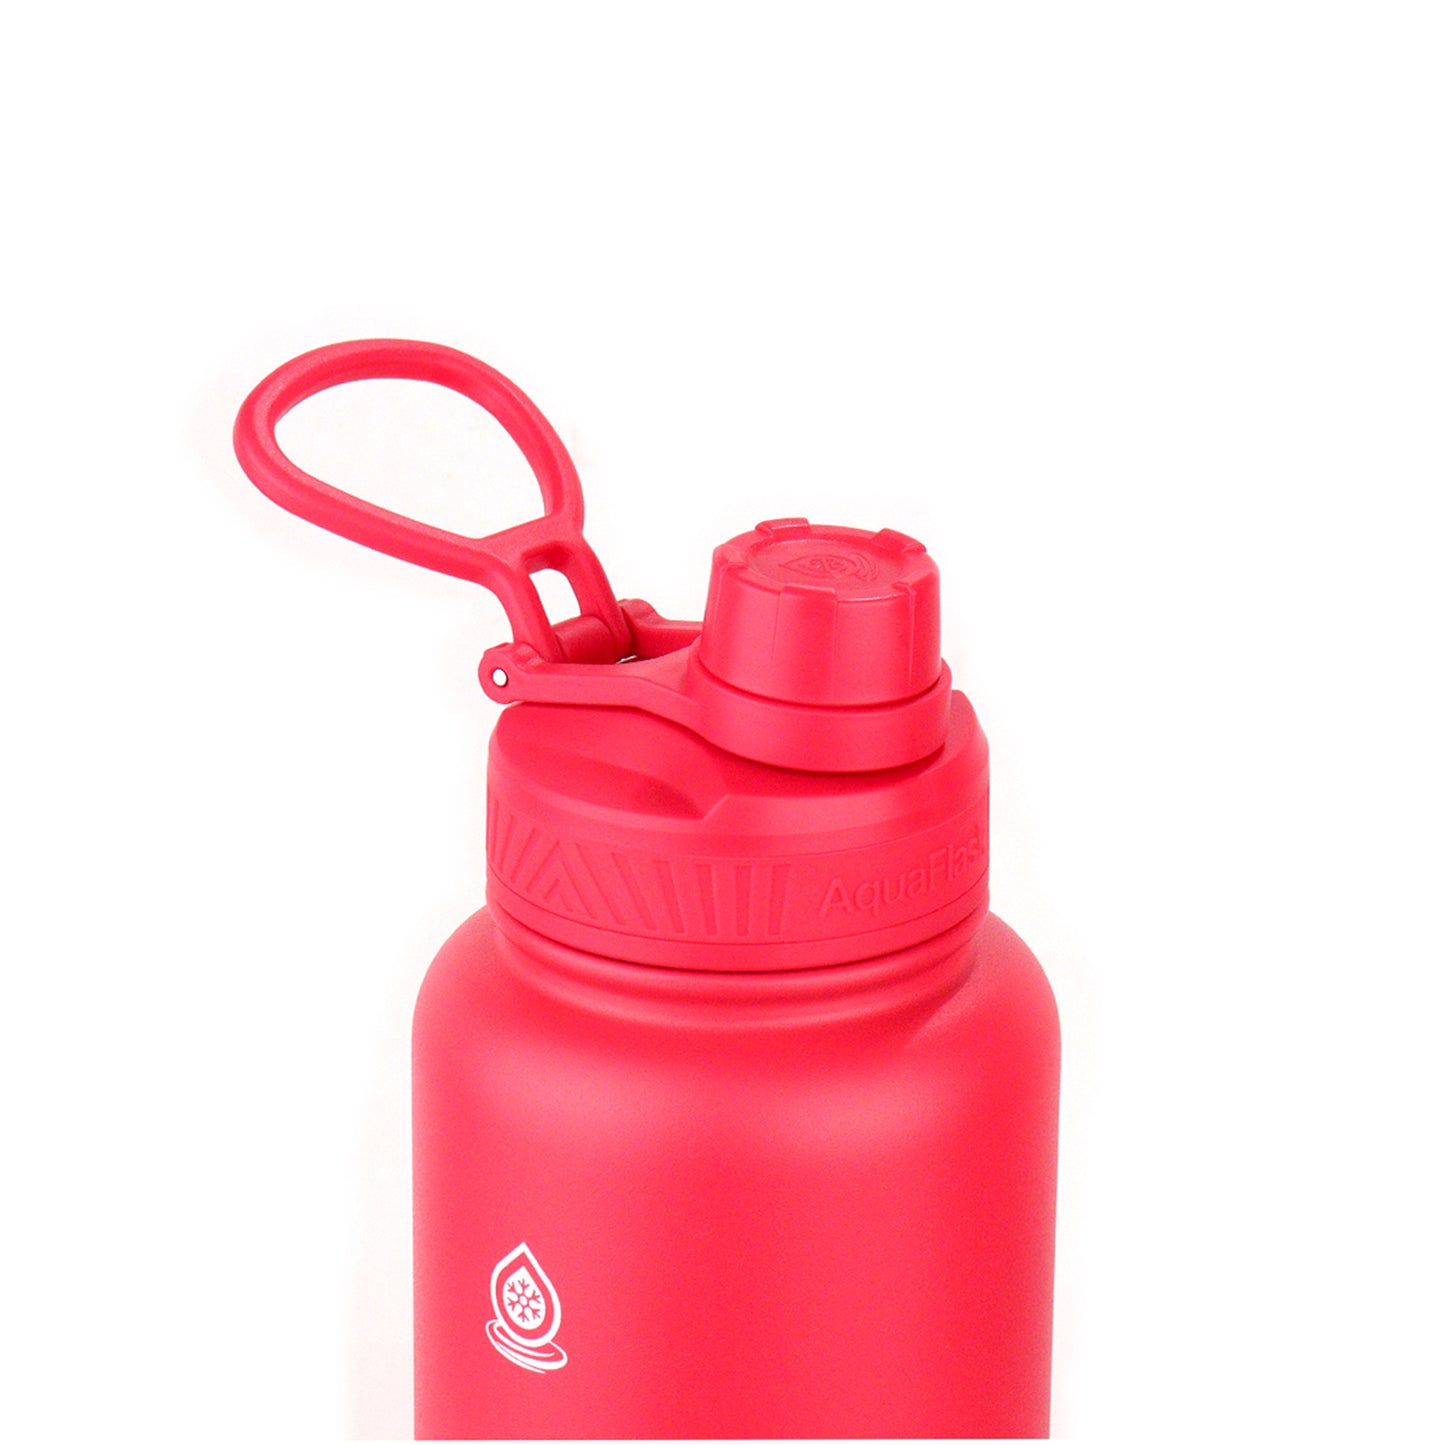 AquaFlask Dream 3 Vacuum Insulated Water Bottles 1180ml (40oz)